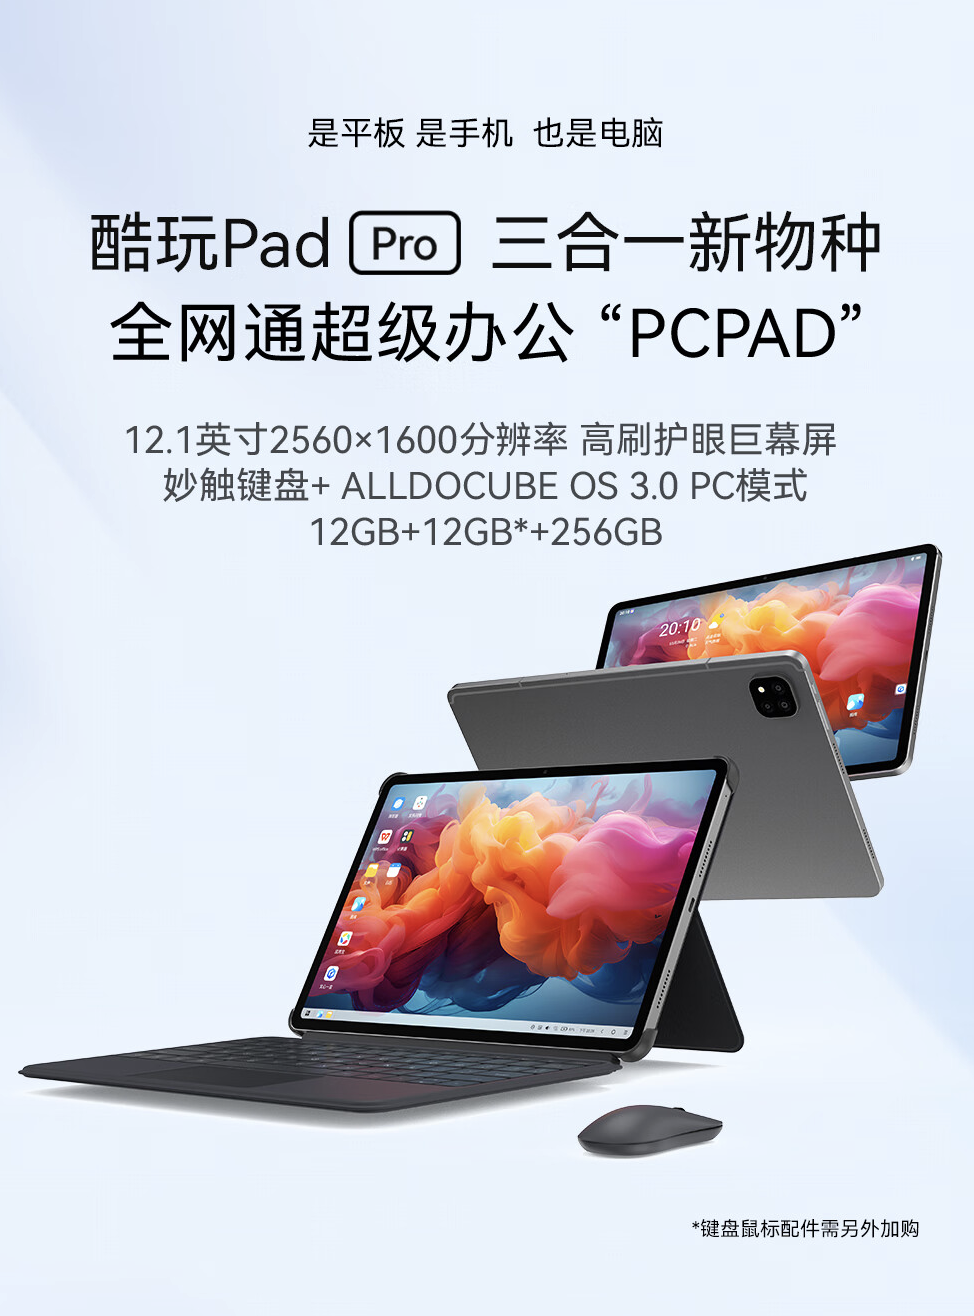 酷比魔方酷玩 Pad Pro 12.1 英寸三合一平板开售，12+256GB 到手 1299 元